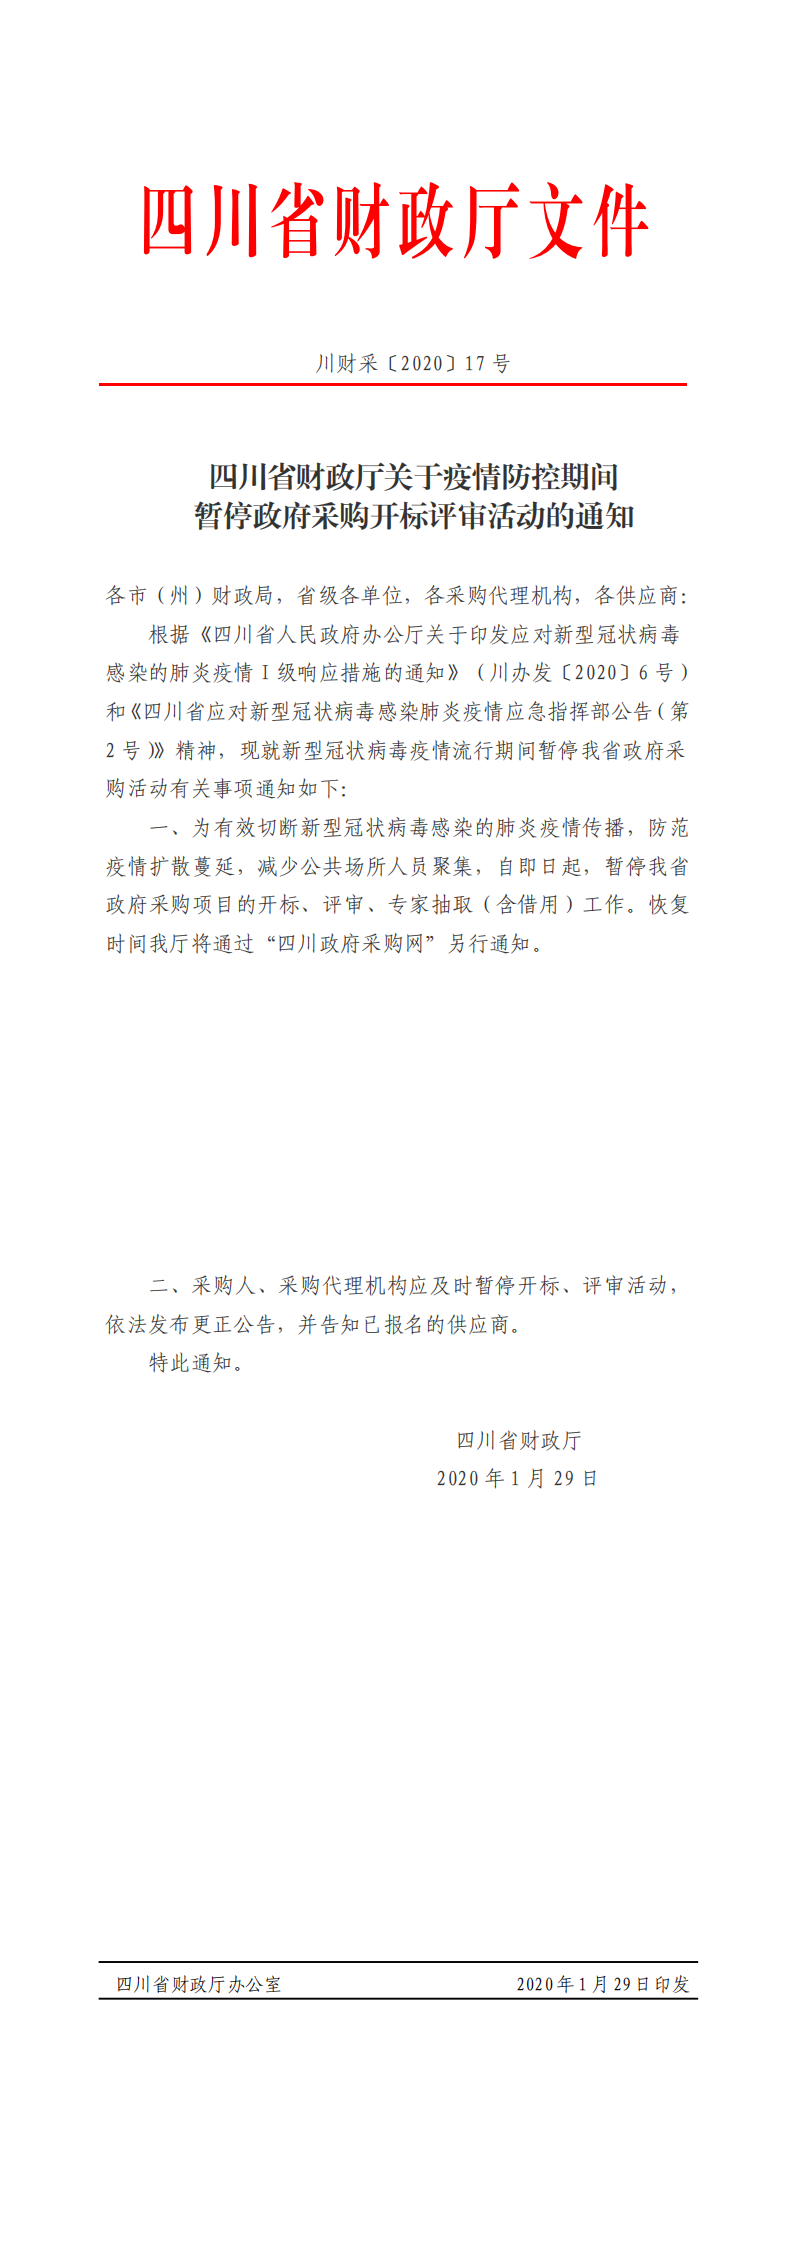 四川省财政厅关于疫情防控期间暂停政府采购开标评审活动的通知.png